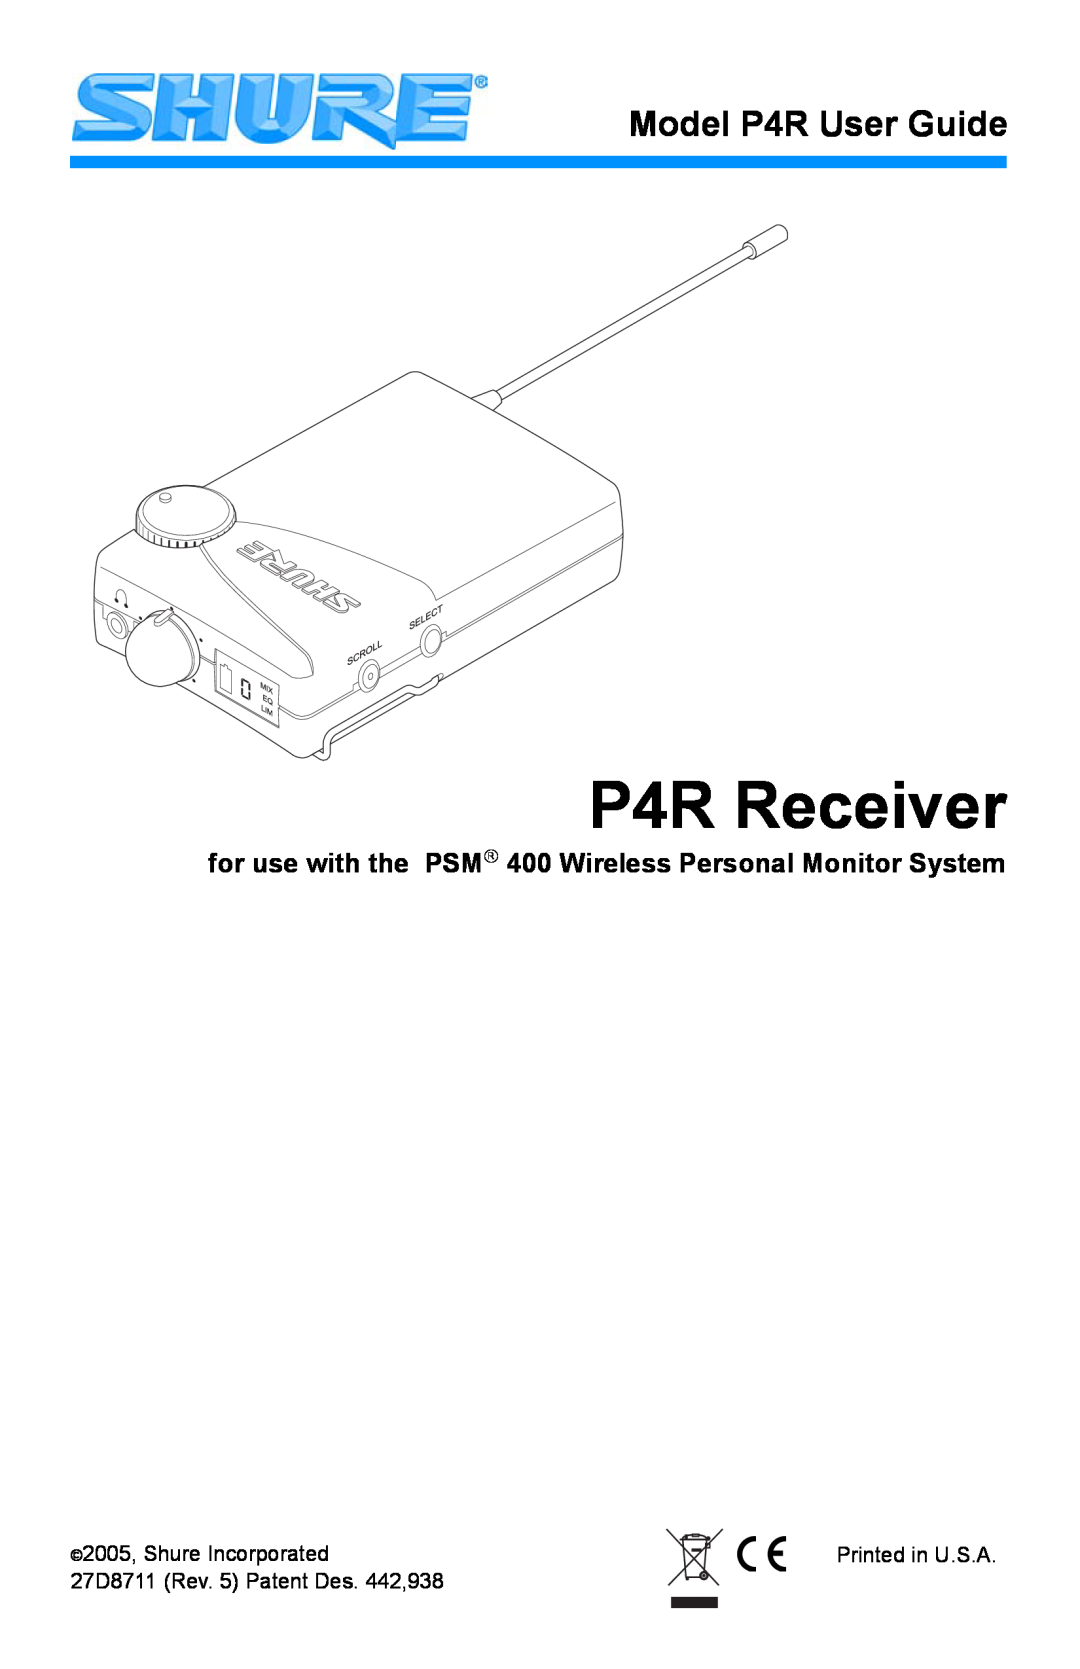 Shure manual P4R Receiver, Model P4R User Guide 